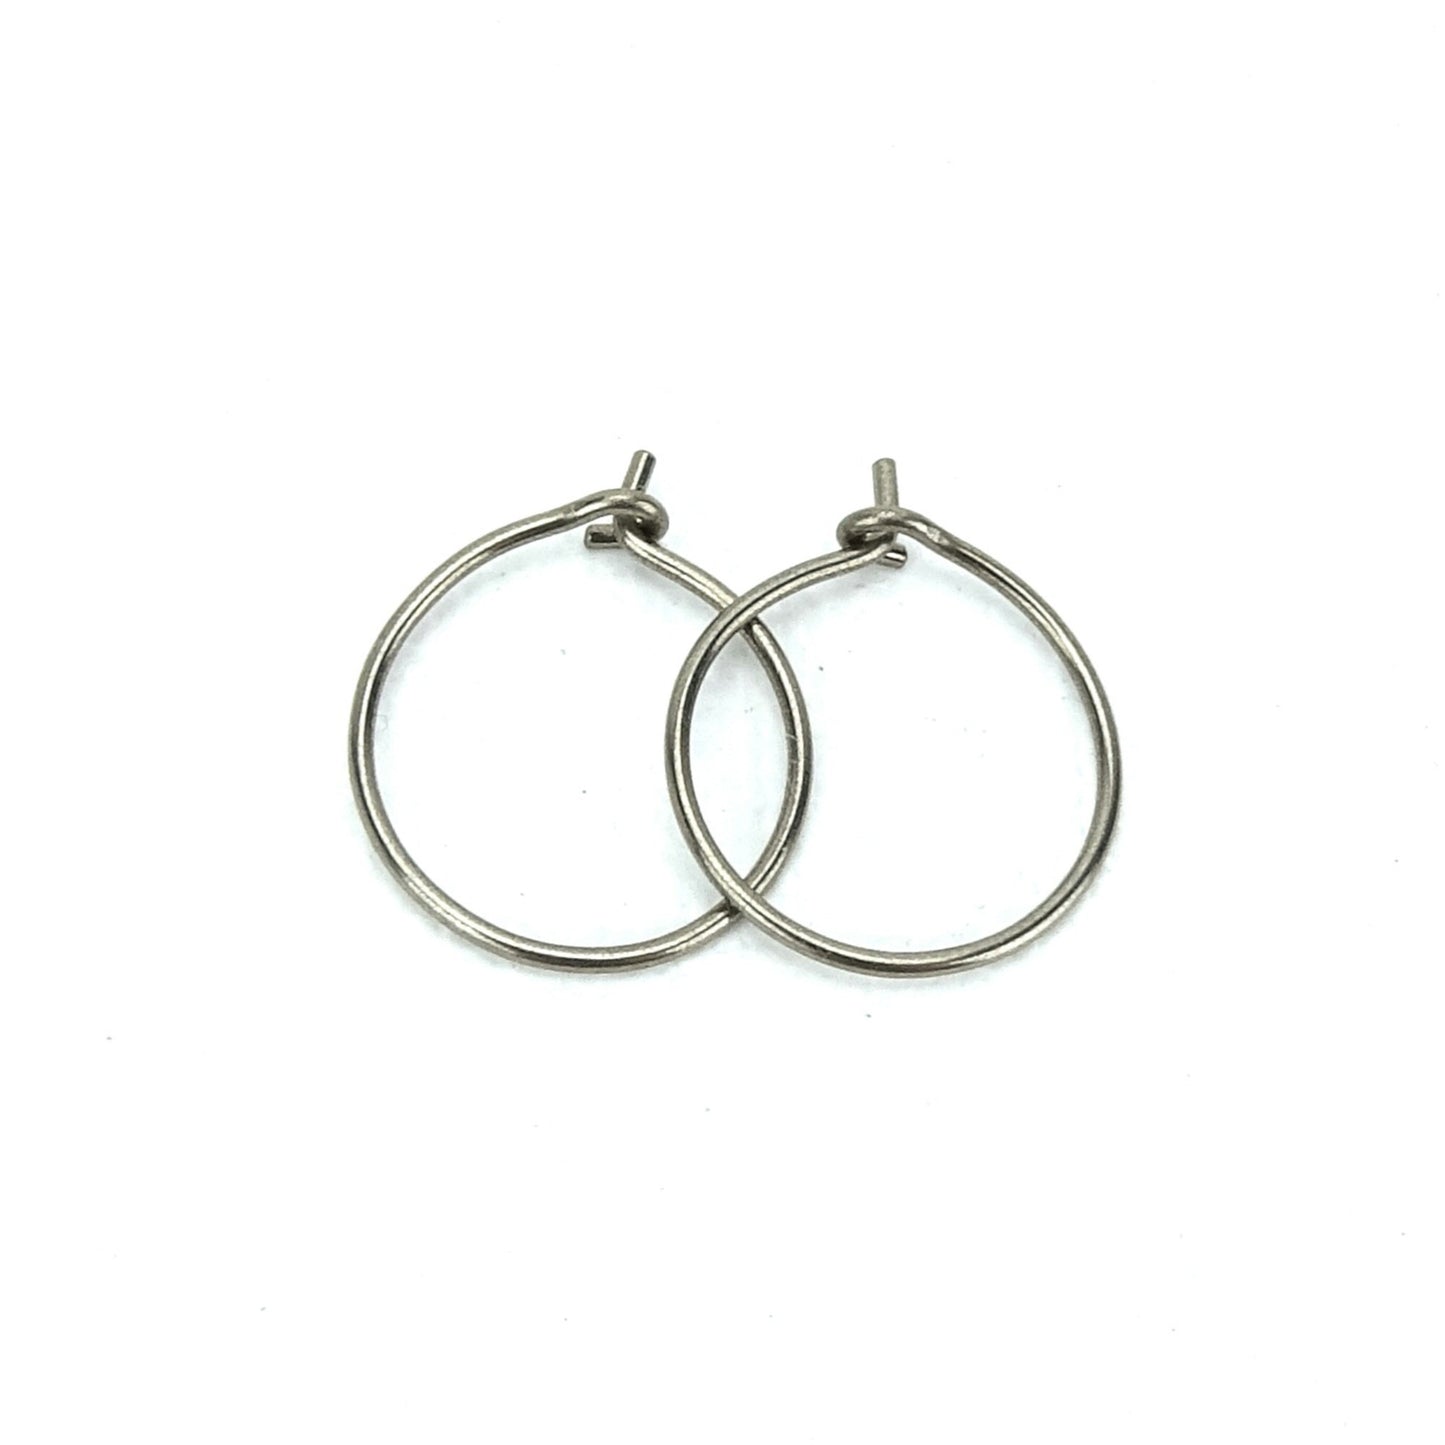 Small Niobium Hoop Earrings, Nickel Free Silver Color Hoops, Hypoallergenic Earrings for Sensitive Ears